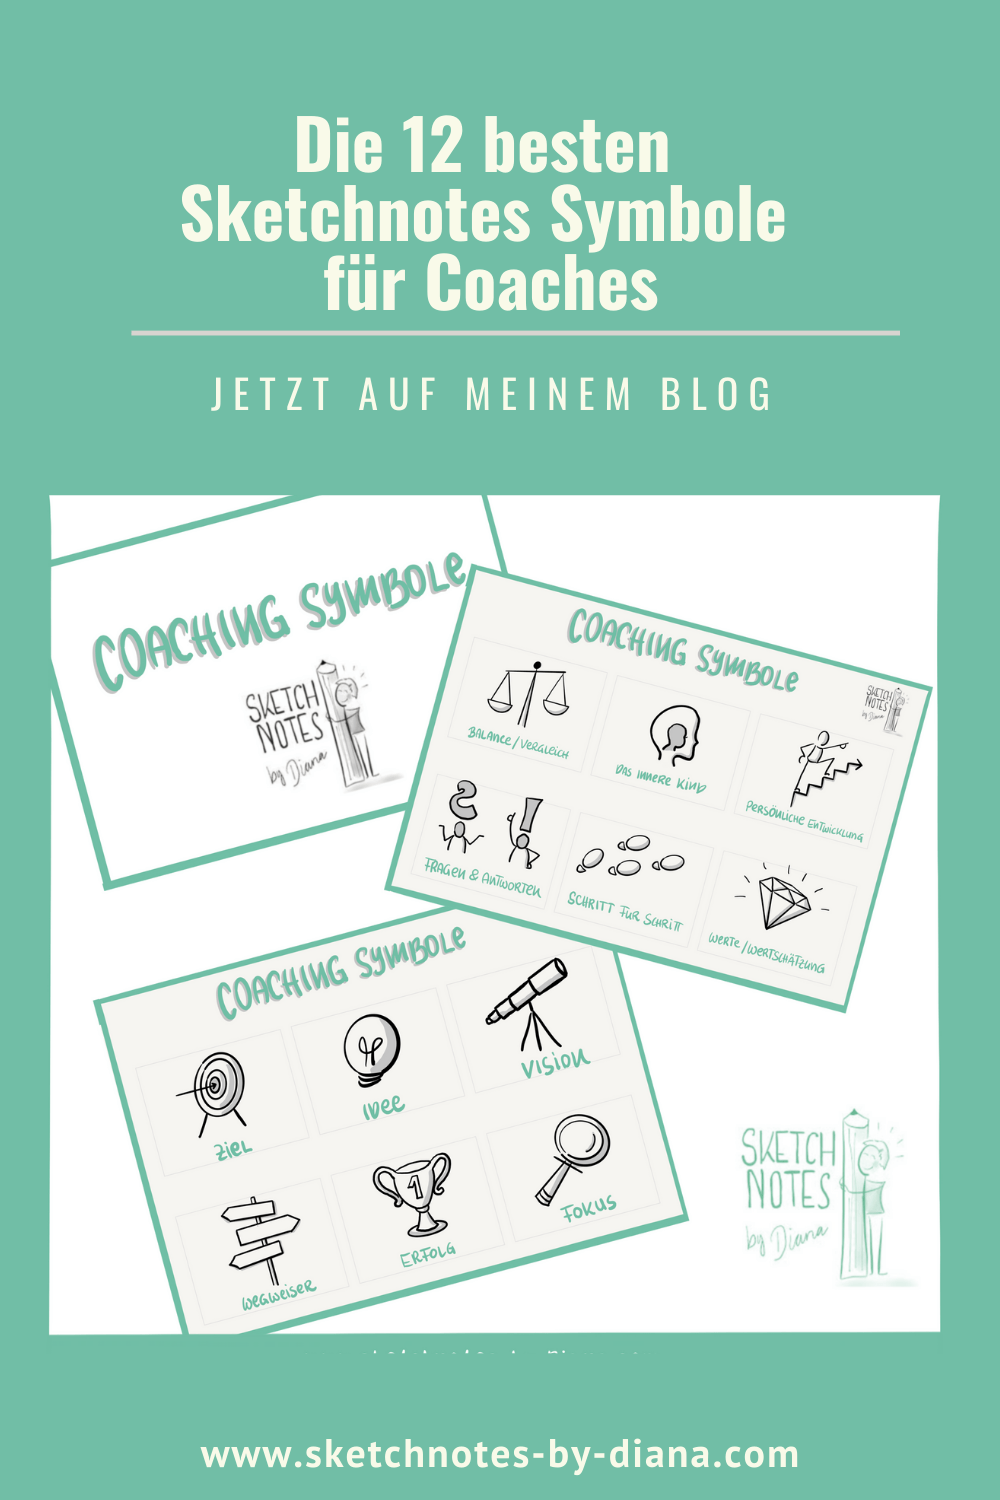 Die 12 besten Sketchnotes Symbole für Coaches